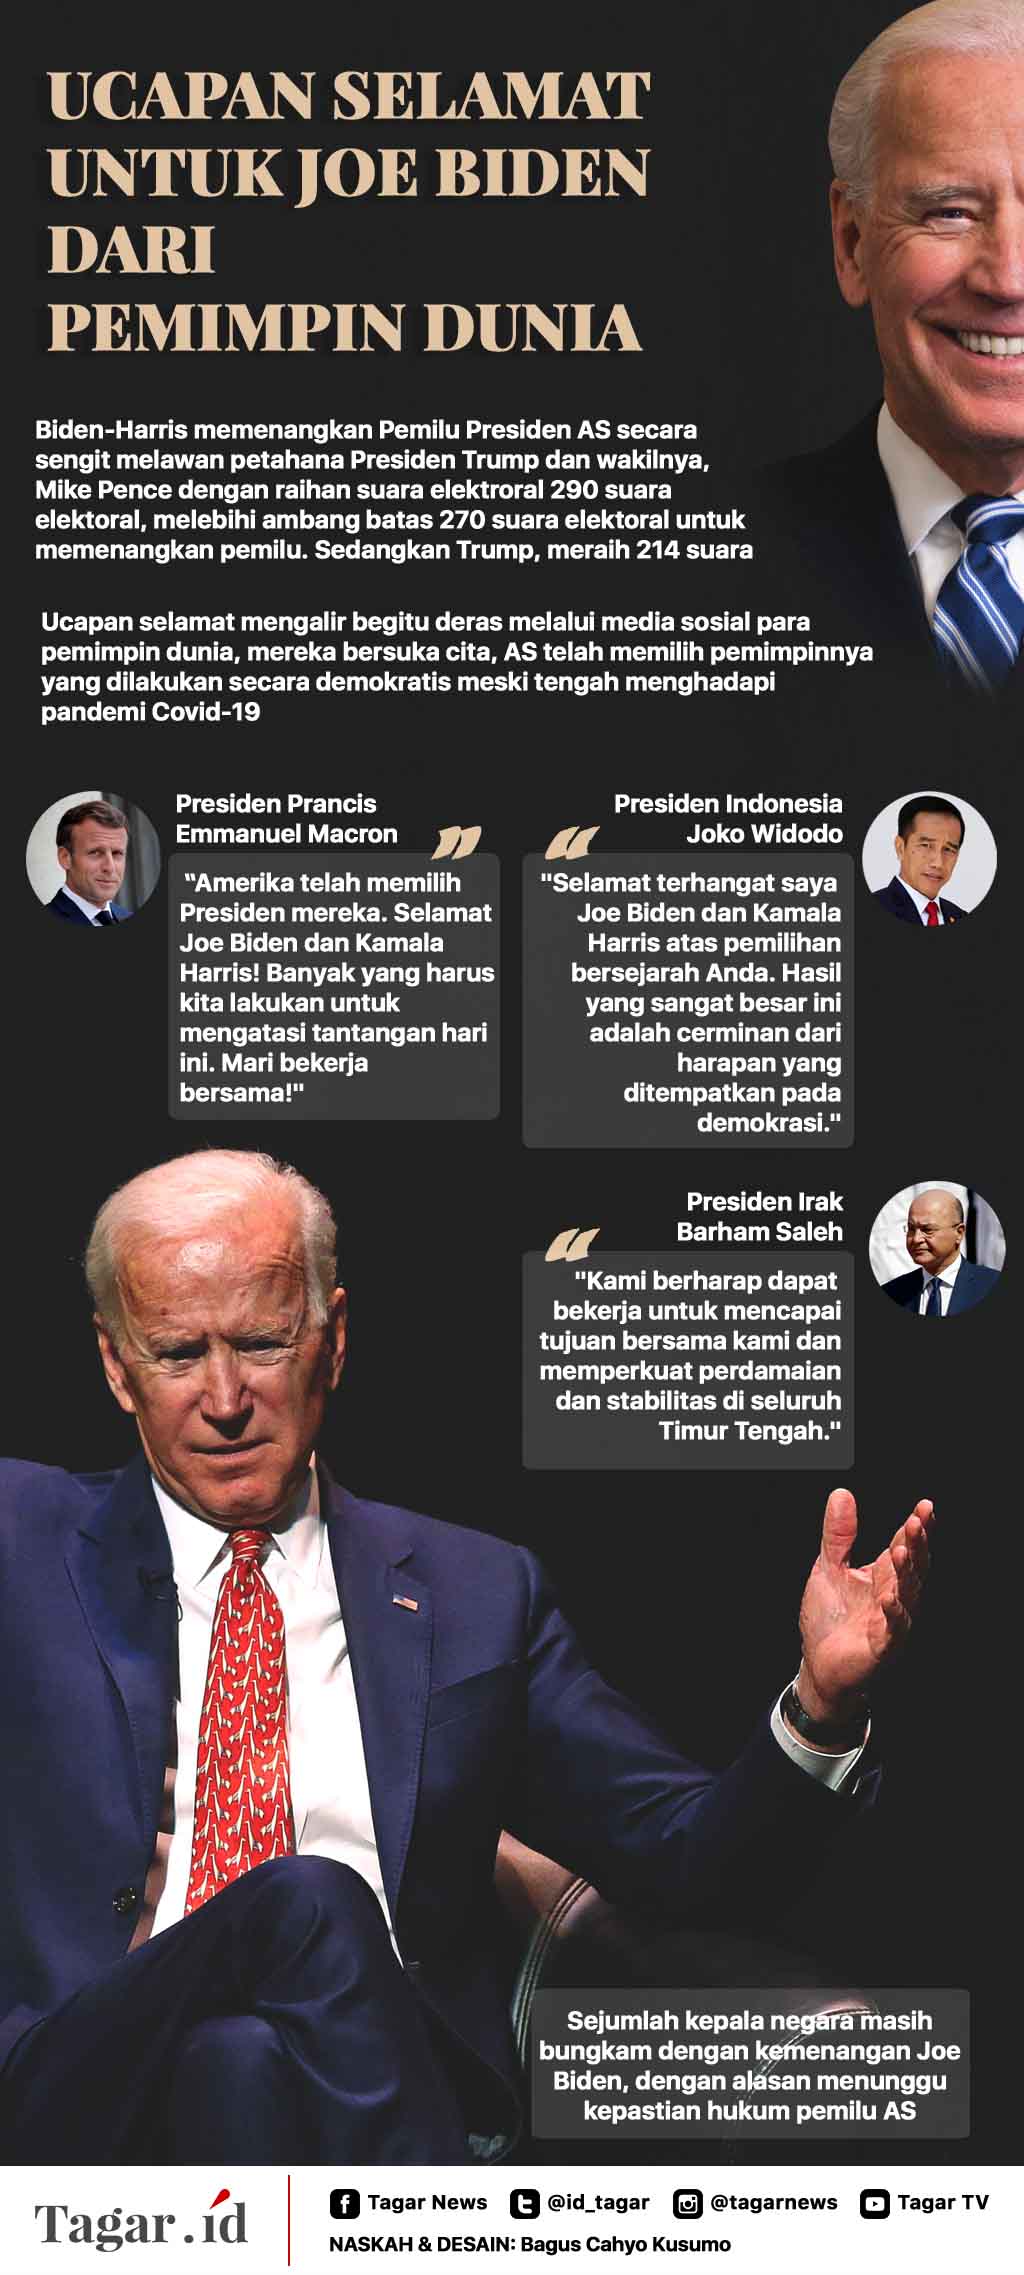 Infografis: Ucapan Selamat untuk Joe Biden dari Pemimpin Dunia